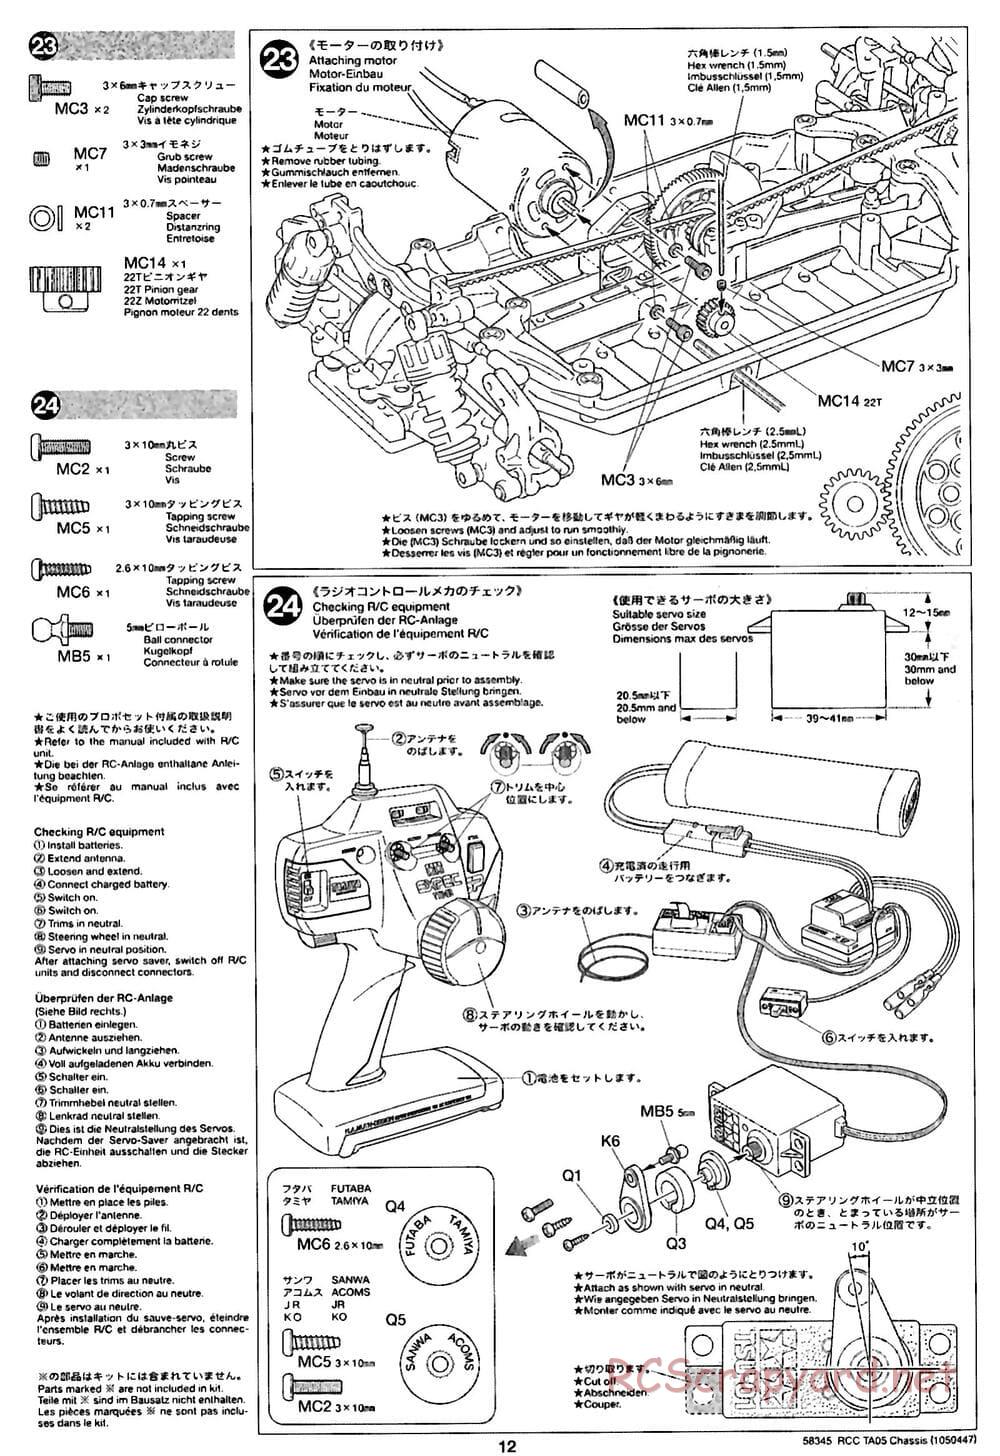 Tamiya - TA05 Chassis - Manual - Page 12